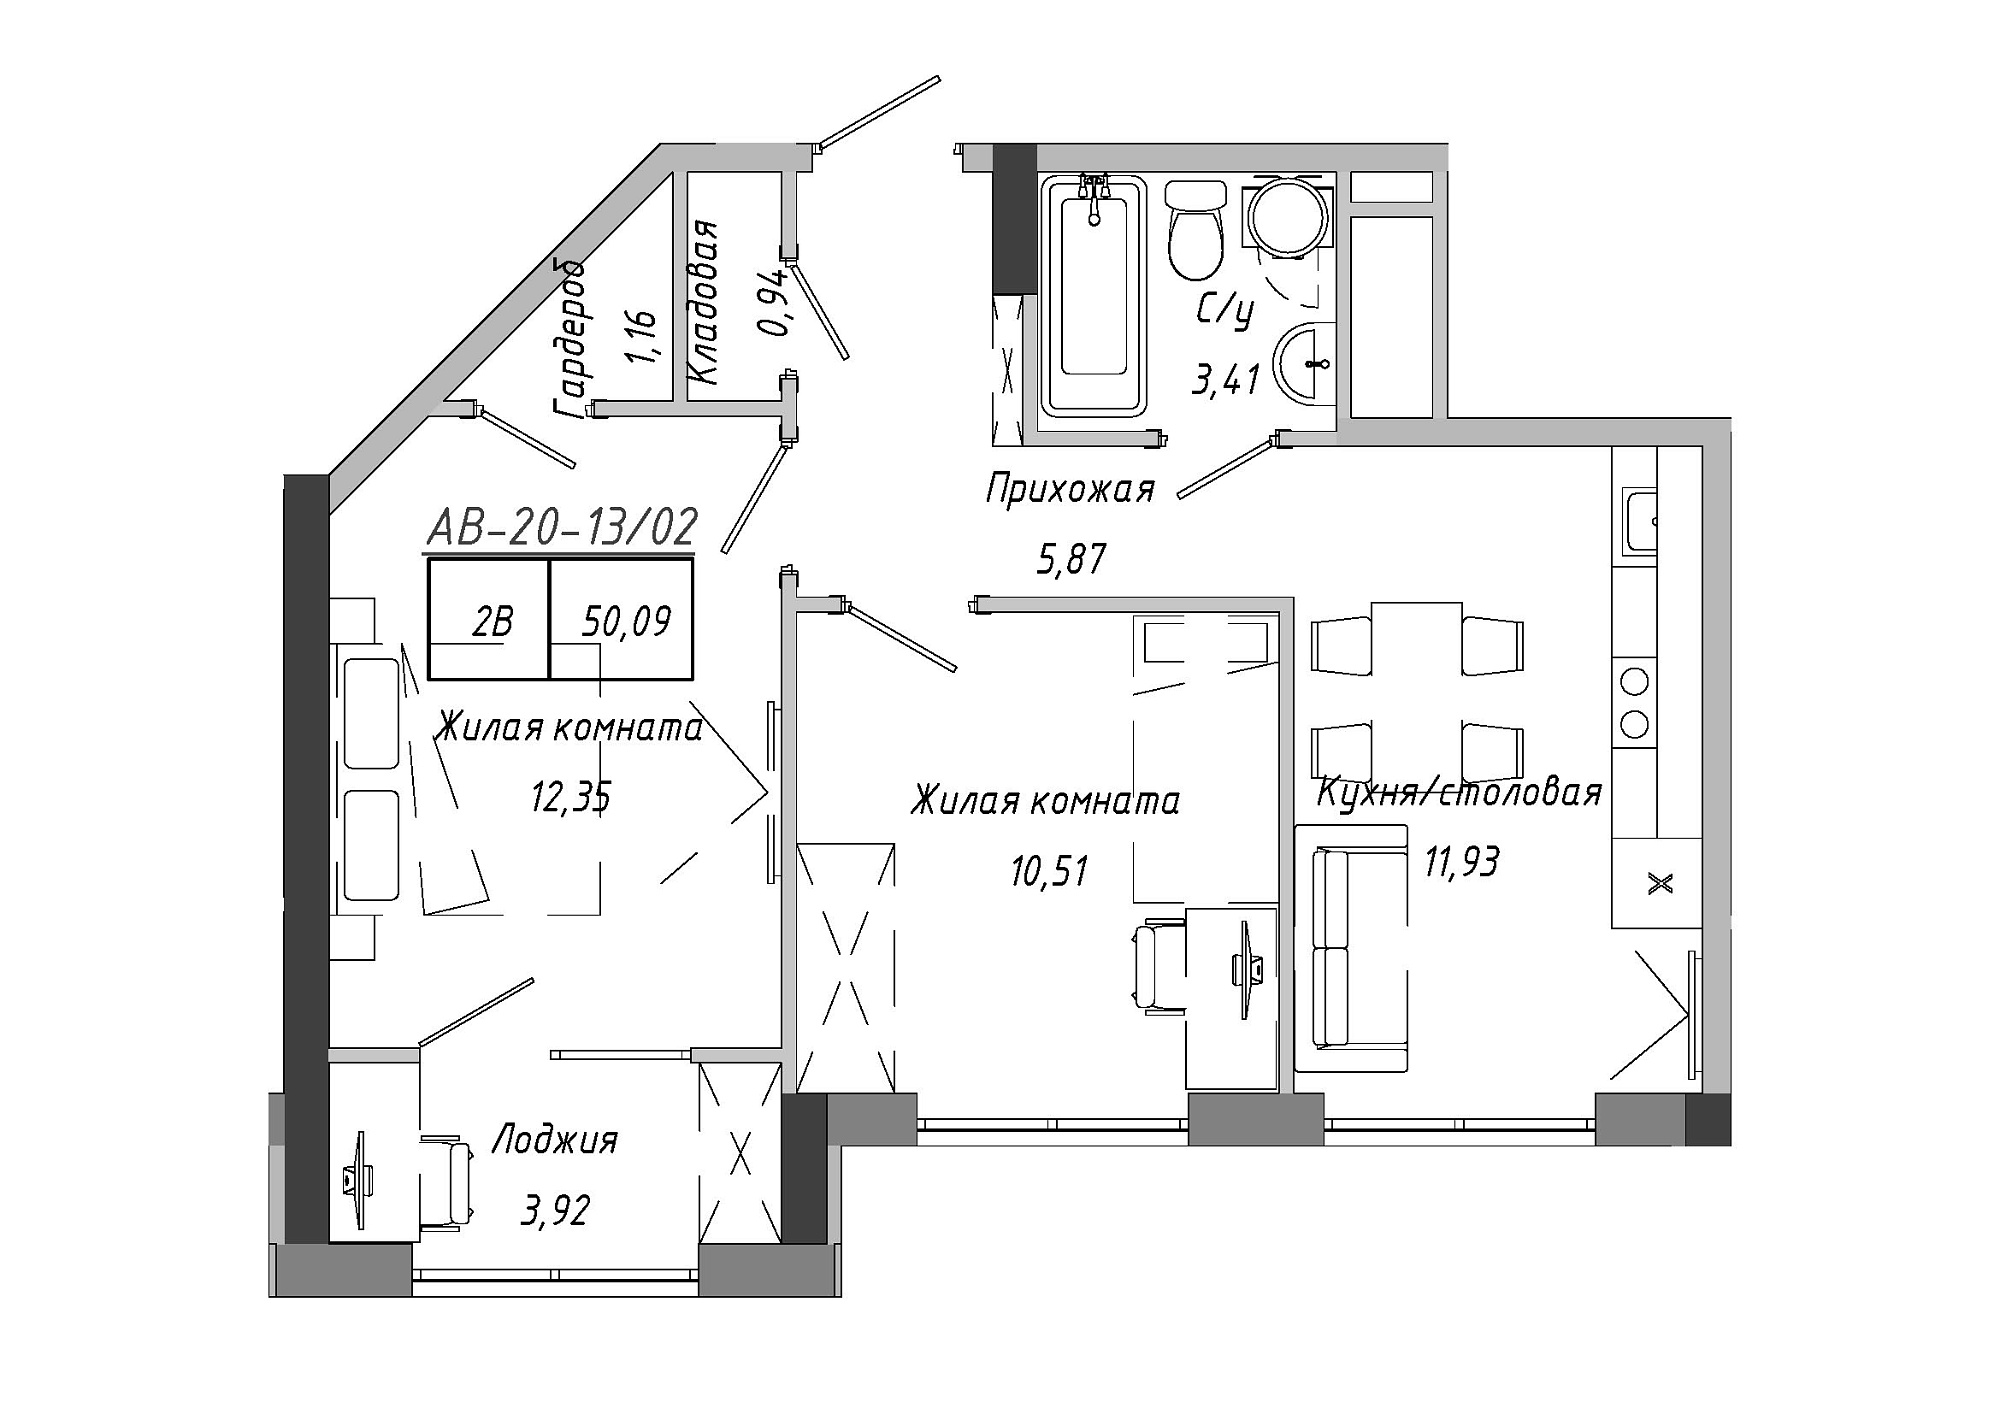 Планировка 2-к квартира площей 50.09м2, AB-20-13/00102.